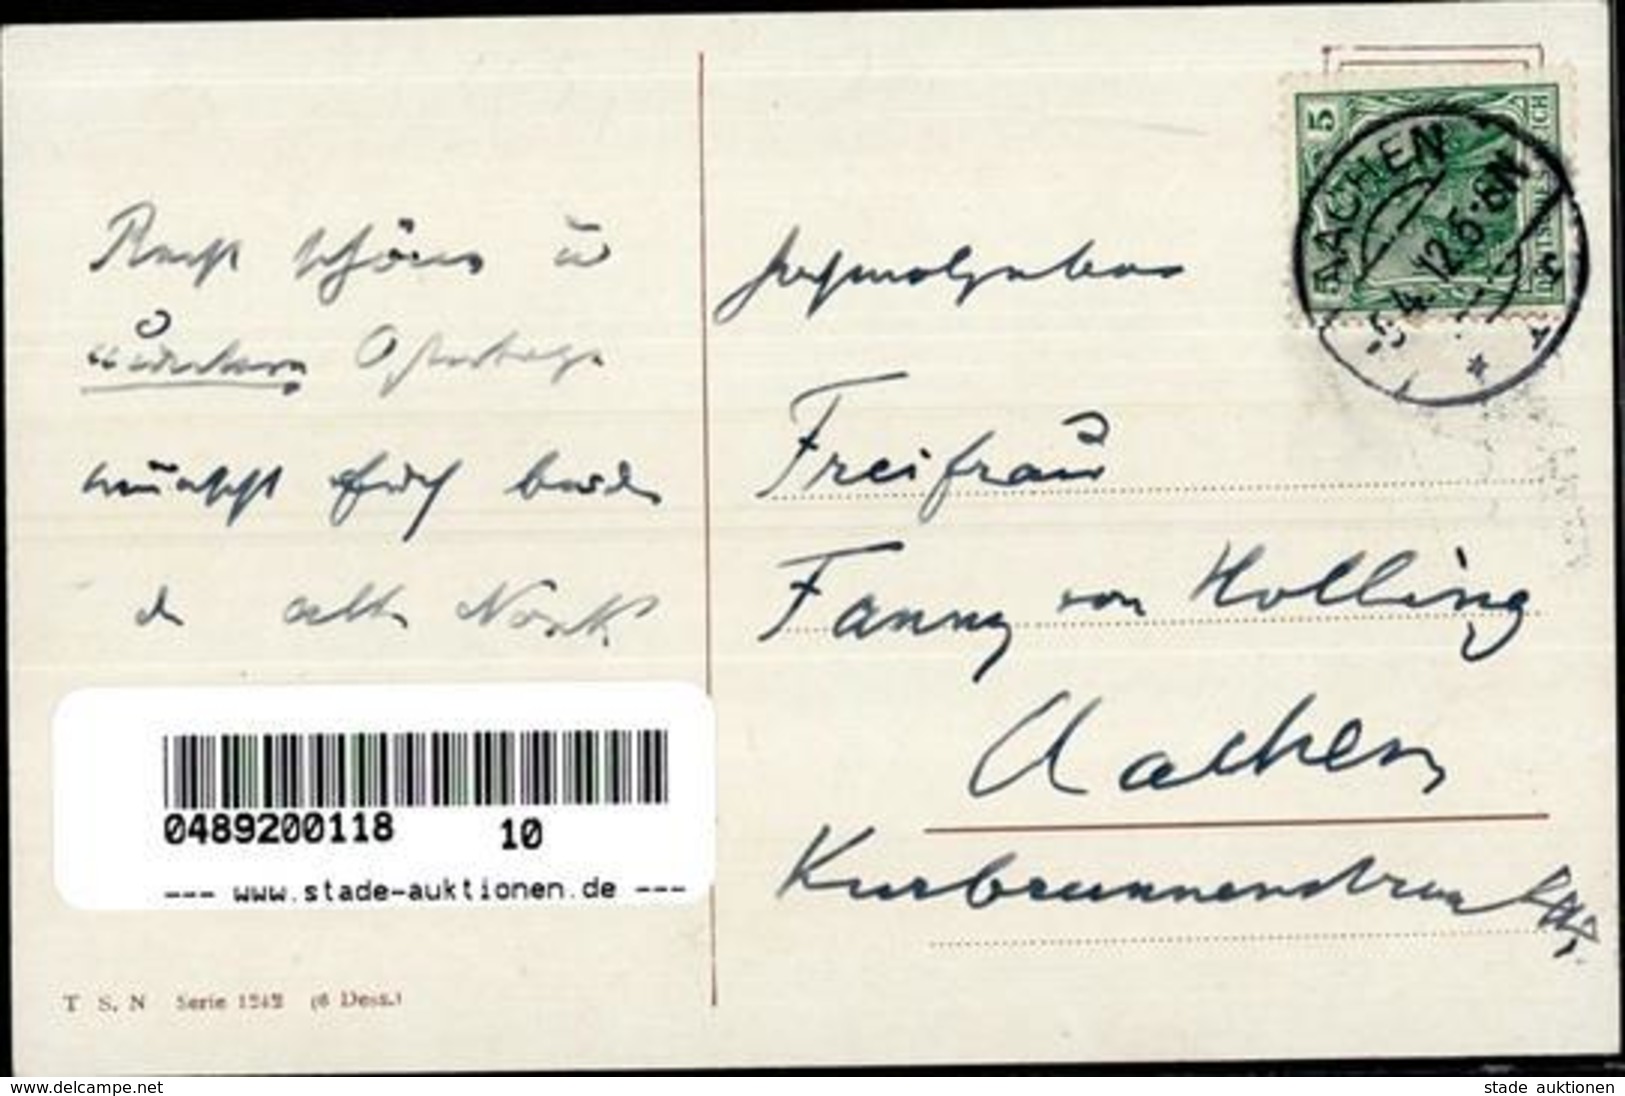 Thiele, Arthur Hahn Hühner Personifiziert 1912 I-II - Thiele, Arthur